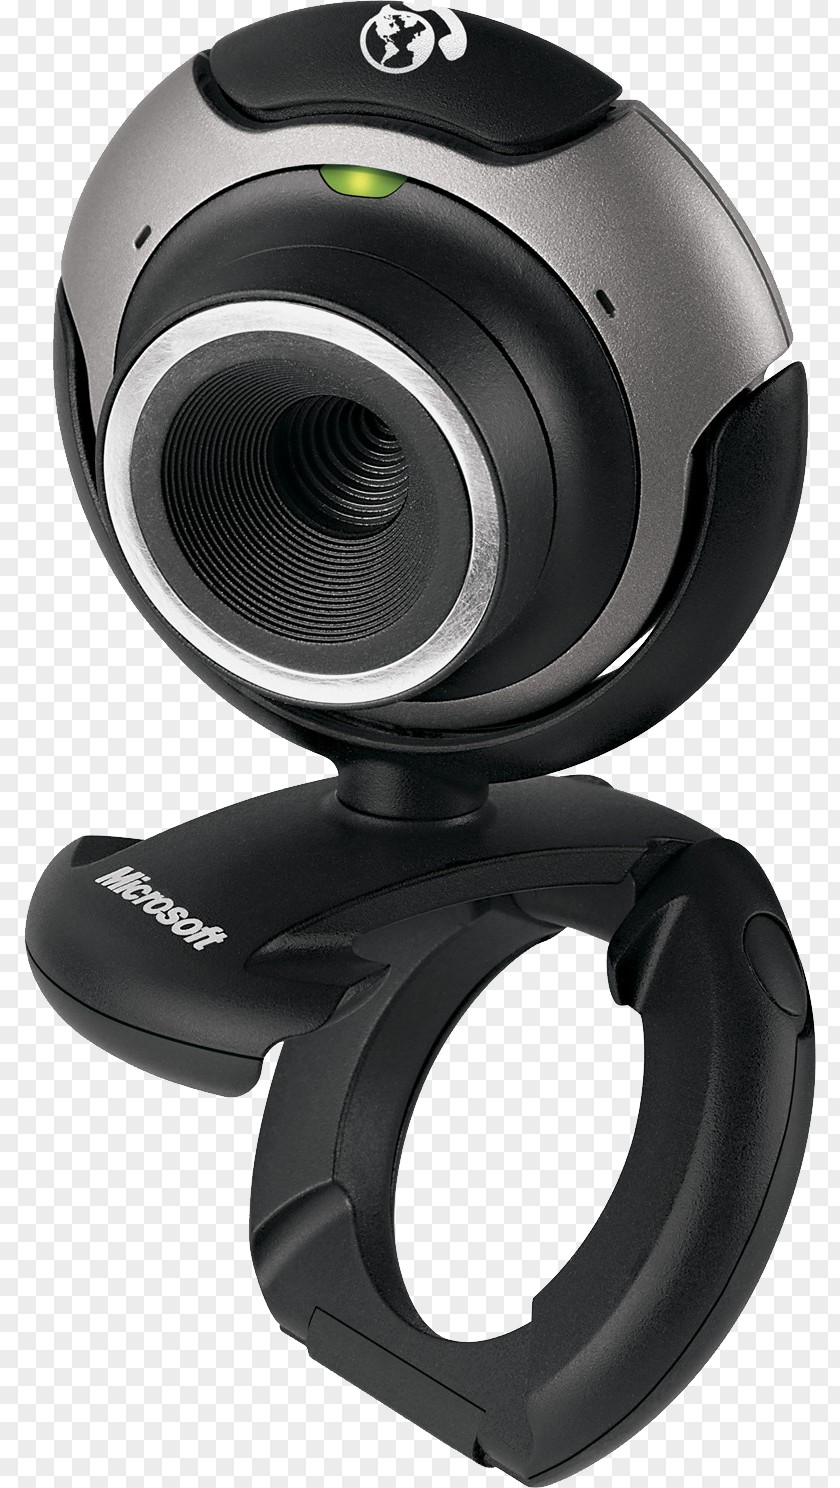 Web Camera Image Webcam Device Driver LifeCam Microsoft PNG